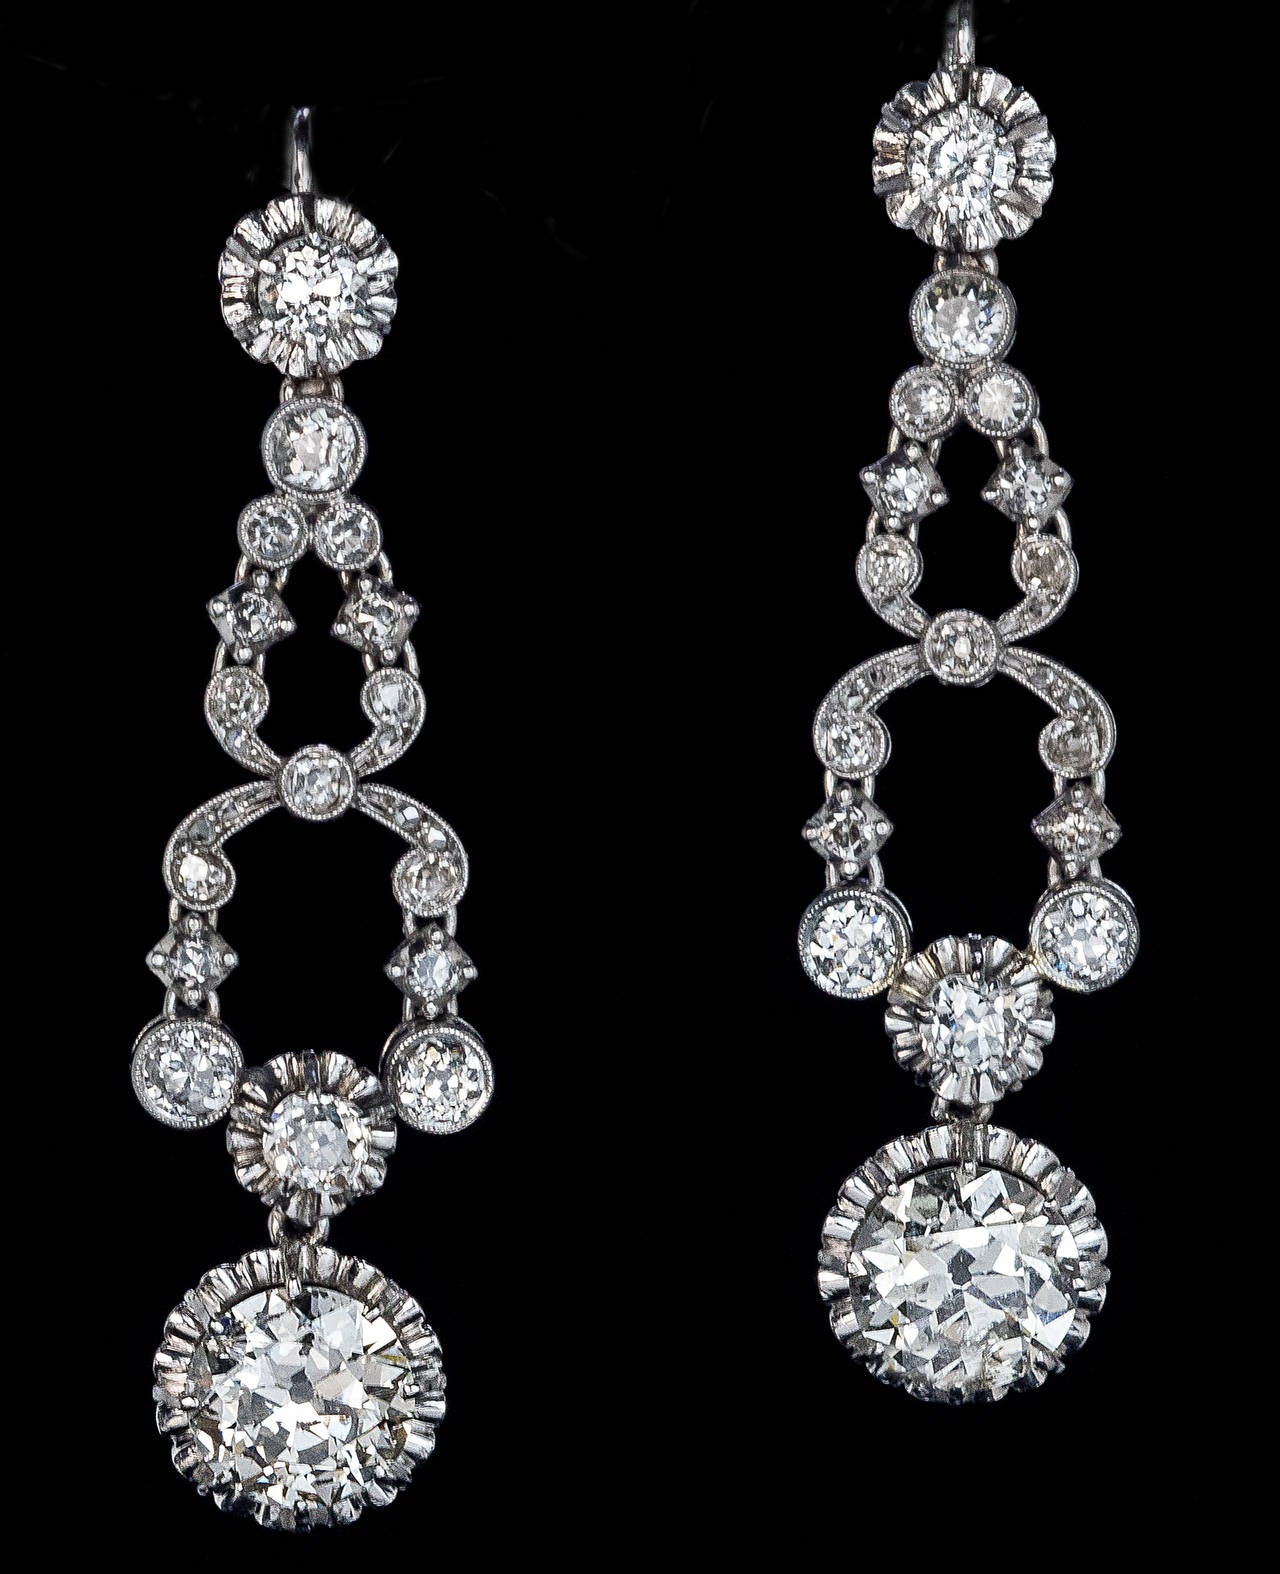 1920s drop earrings